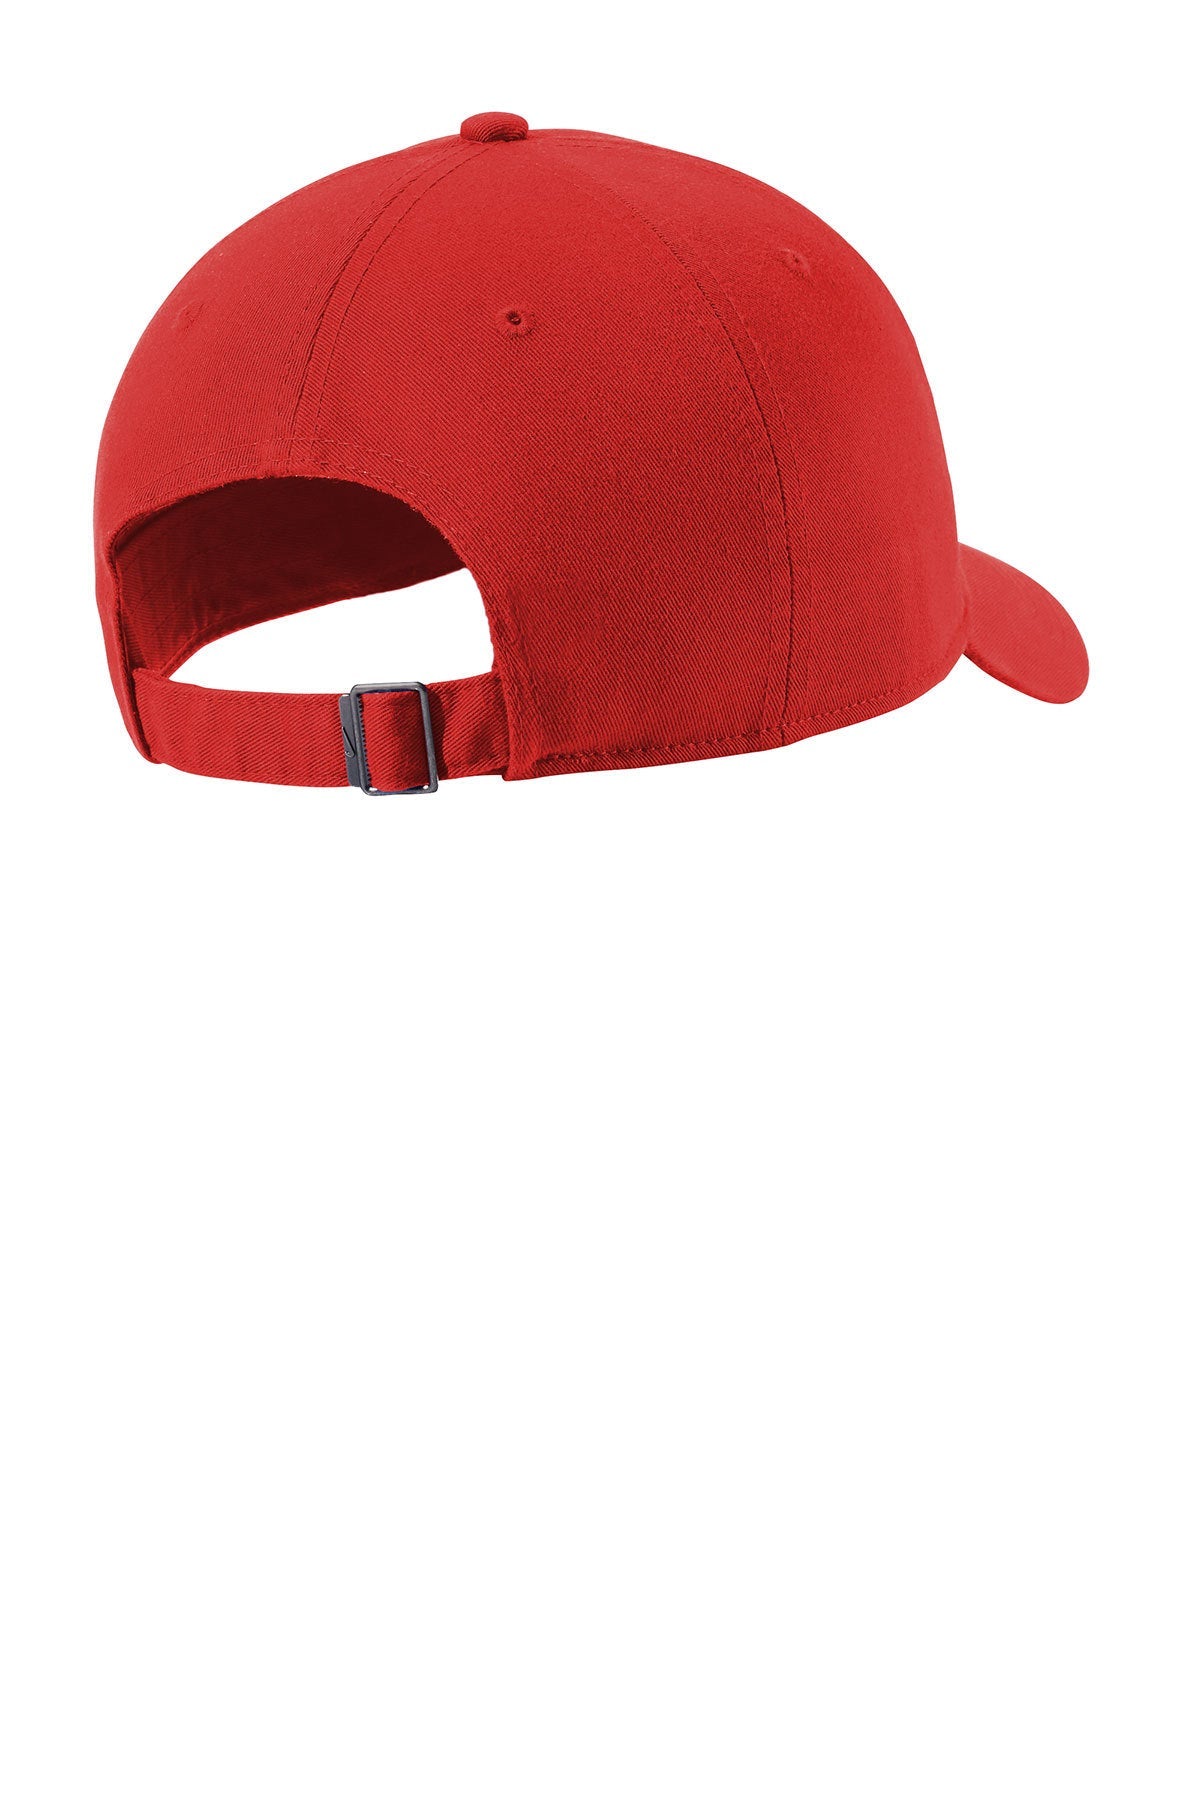 Nike Heritage 86 Customized Caps, University Red